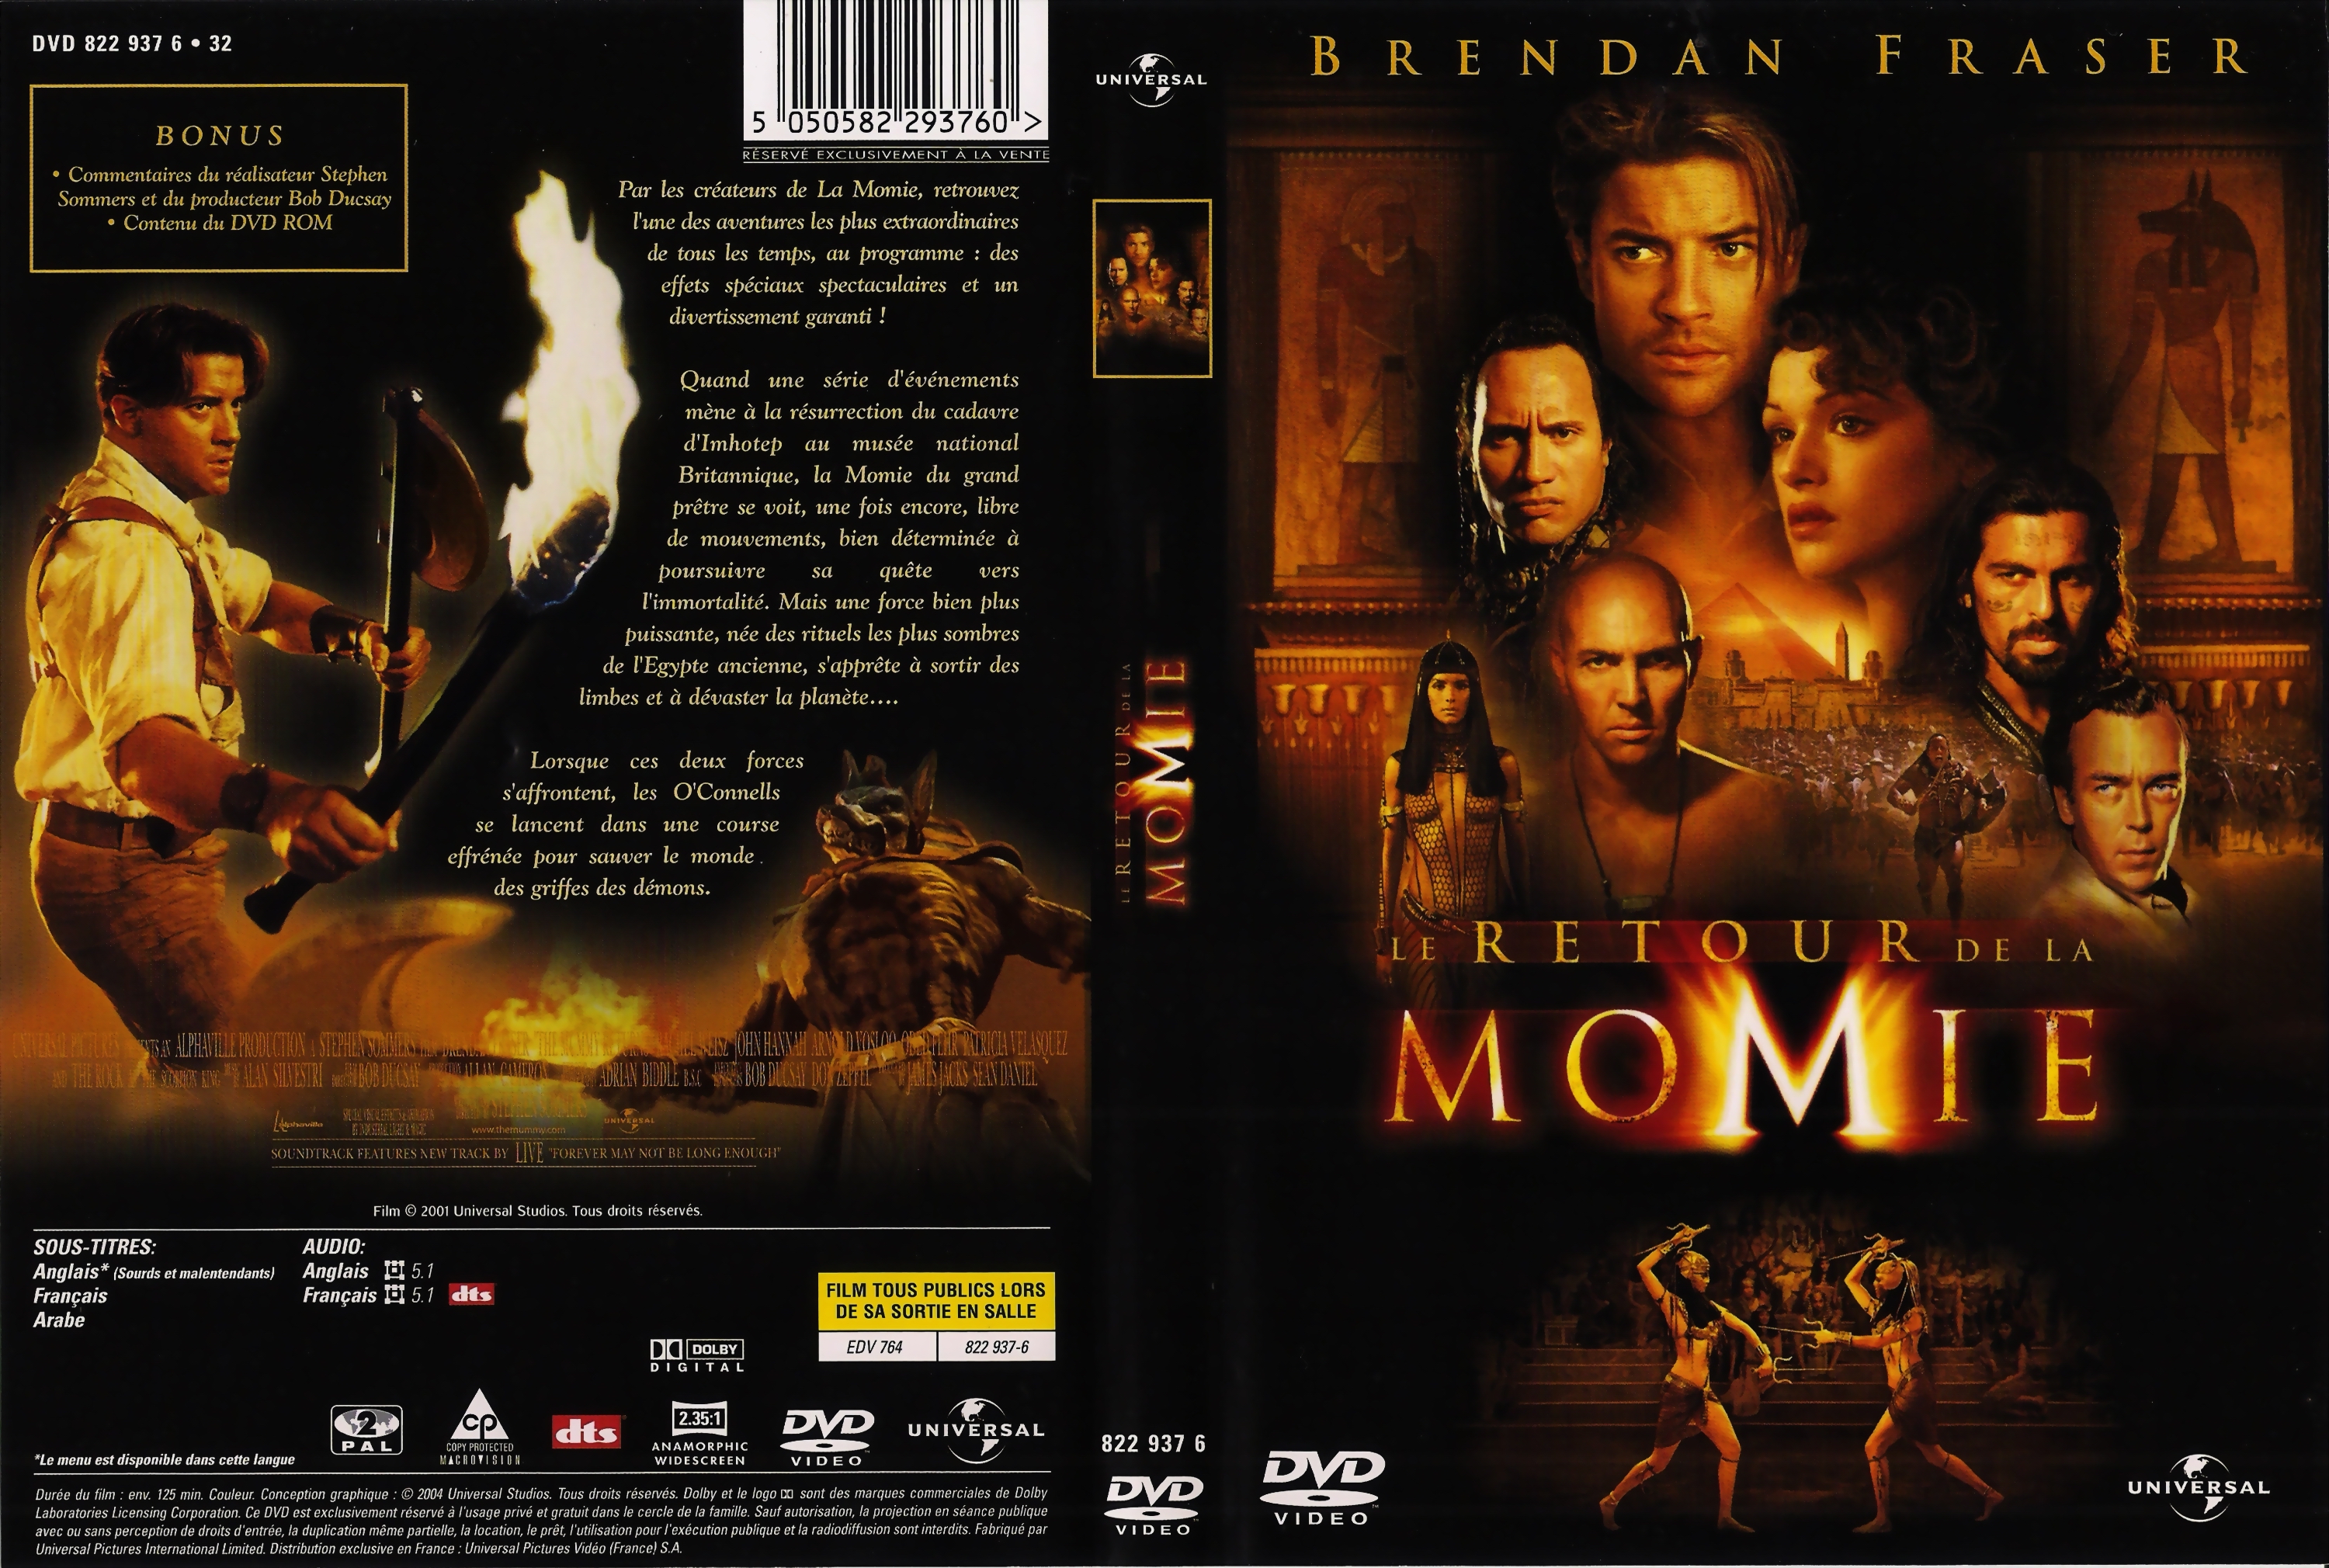 Jaquette DVD Le retour de la momie v3